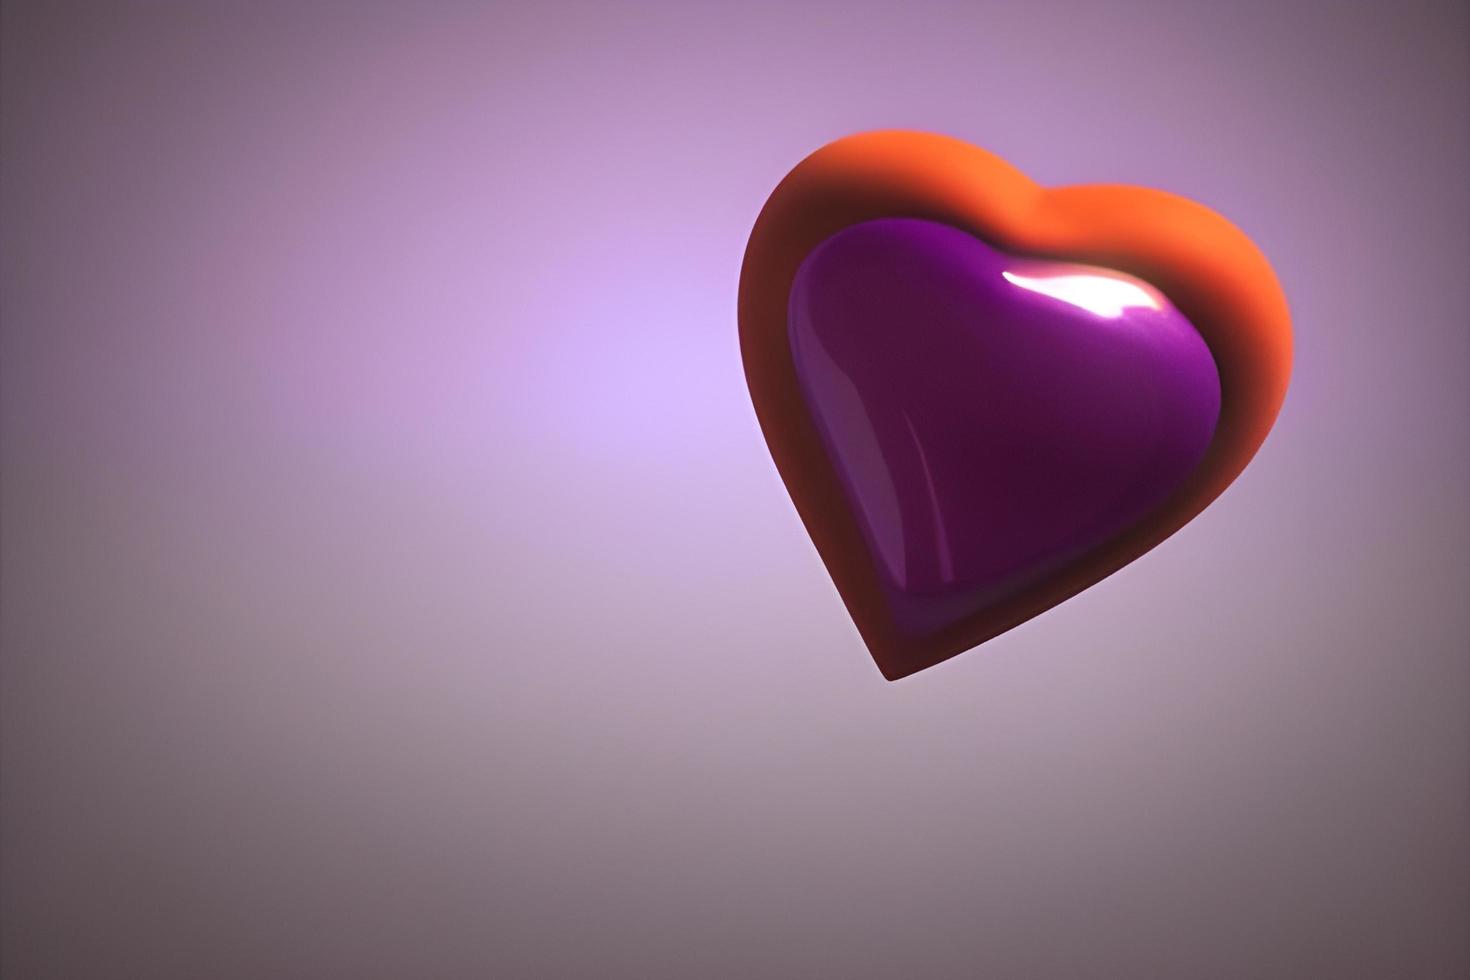 forme de coeur d'amour violet photo